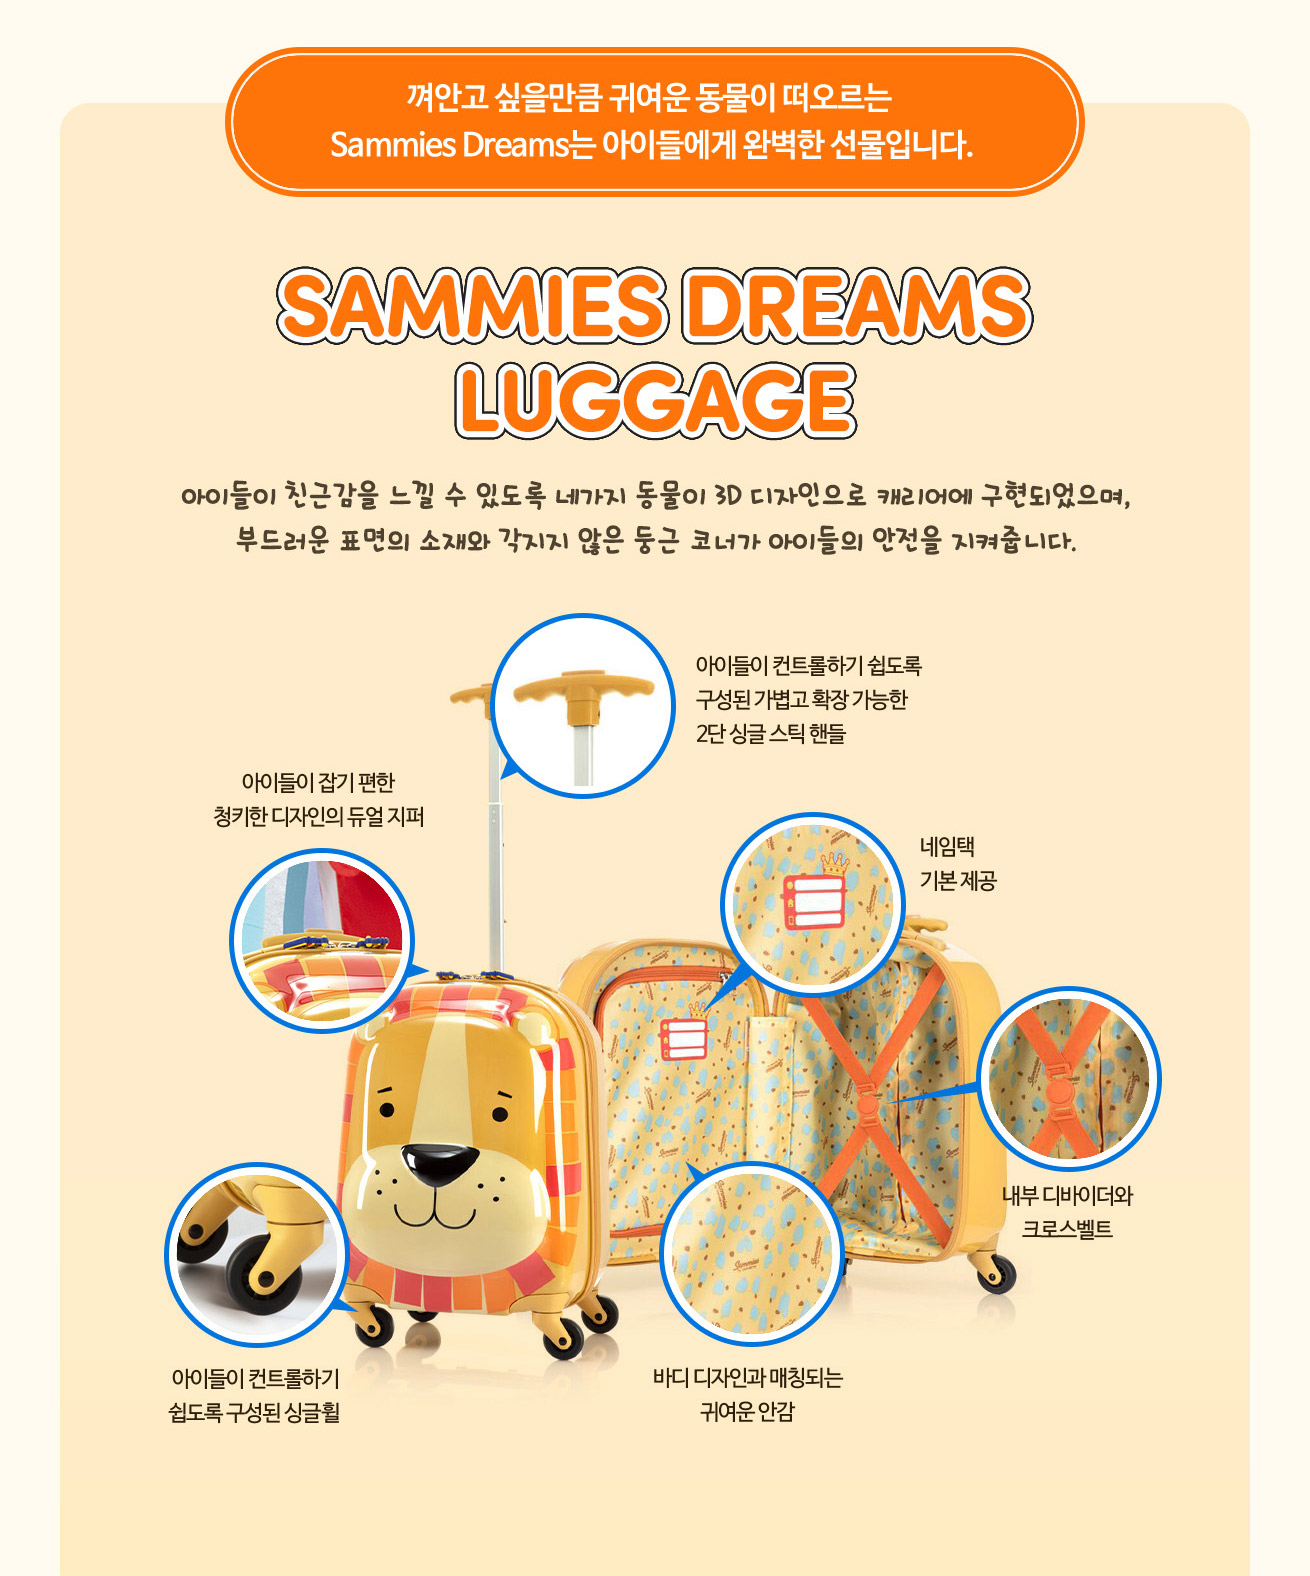 SAMMIES DREAMS LUGGAGE 아이들이 친근감을 느낄 수 있도록 네가지 동물이 3D 디자인으로 캐리어에 구현되었으며, 부드러운 표면의 소재와 각지지 않은 둥근 코너가 아이들의 안전을 지켜줍니다. 